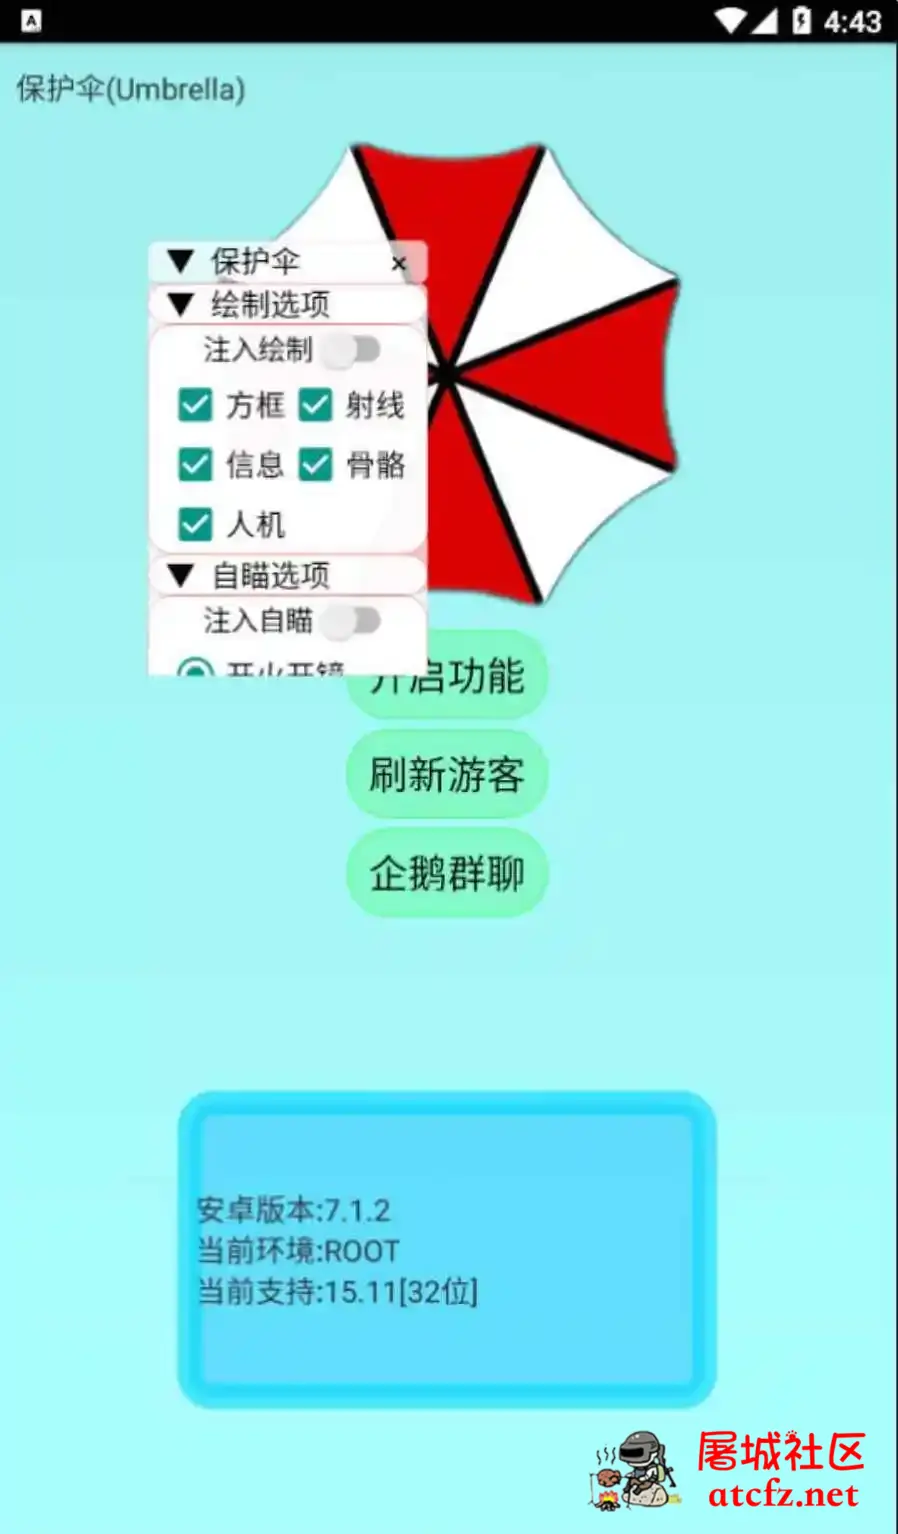 香肠派对保护伞绘制自瞄无后多功能插件 屠城辅助网www.tcfz1.com2398